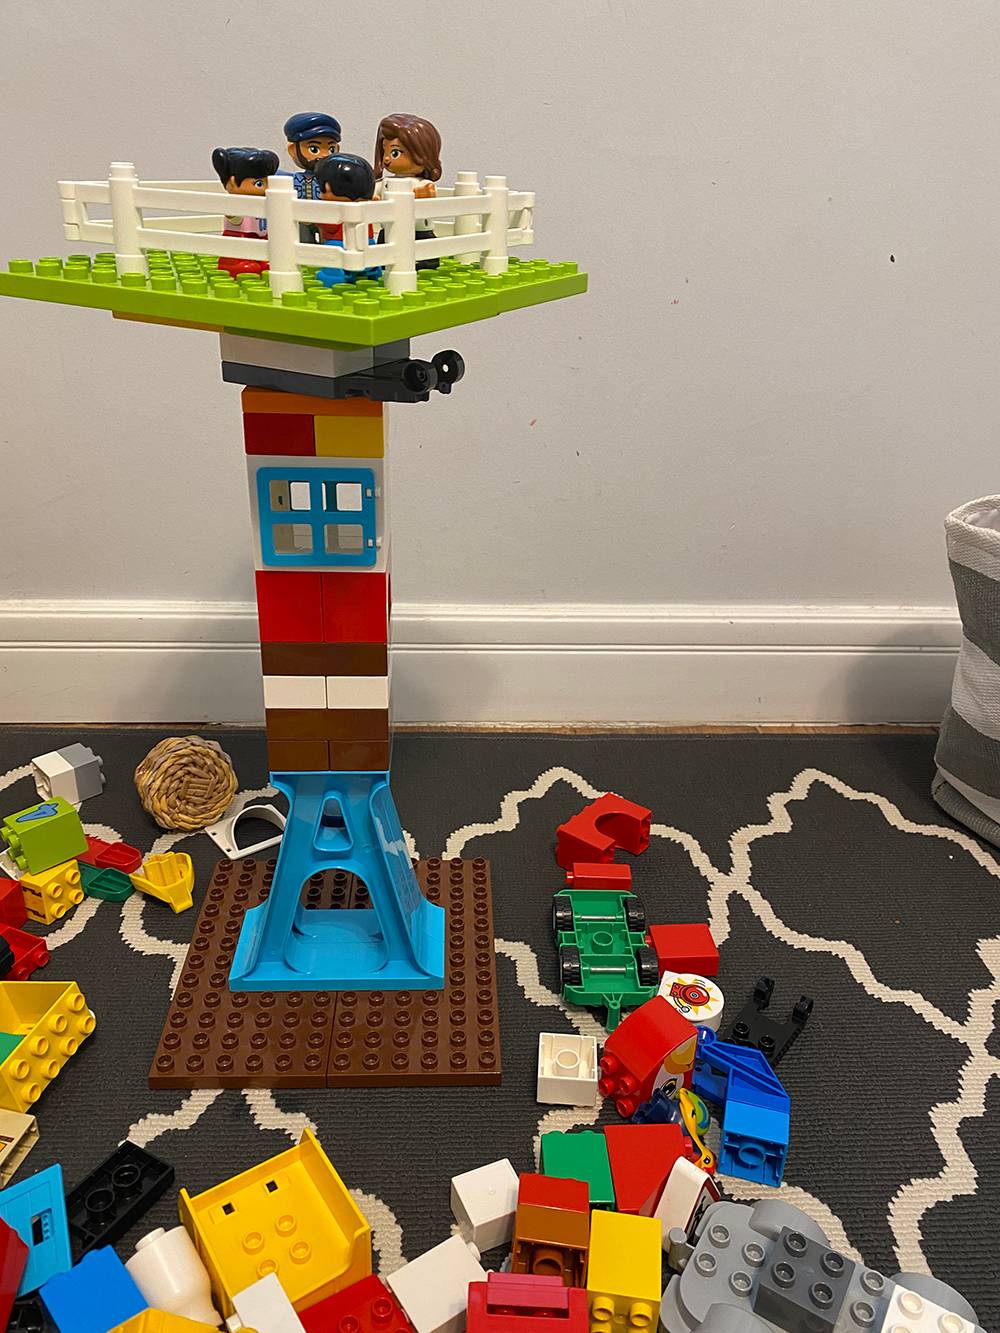 Построили из Lego Duplo большую башню со смотровой площадкой, а потом я додумался поворотную деталь смазать силиконовой смазкой — теперь площадка крутится еще лучше